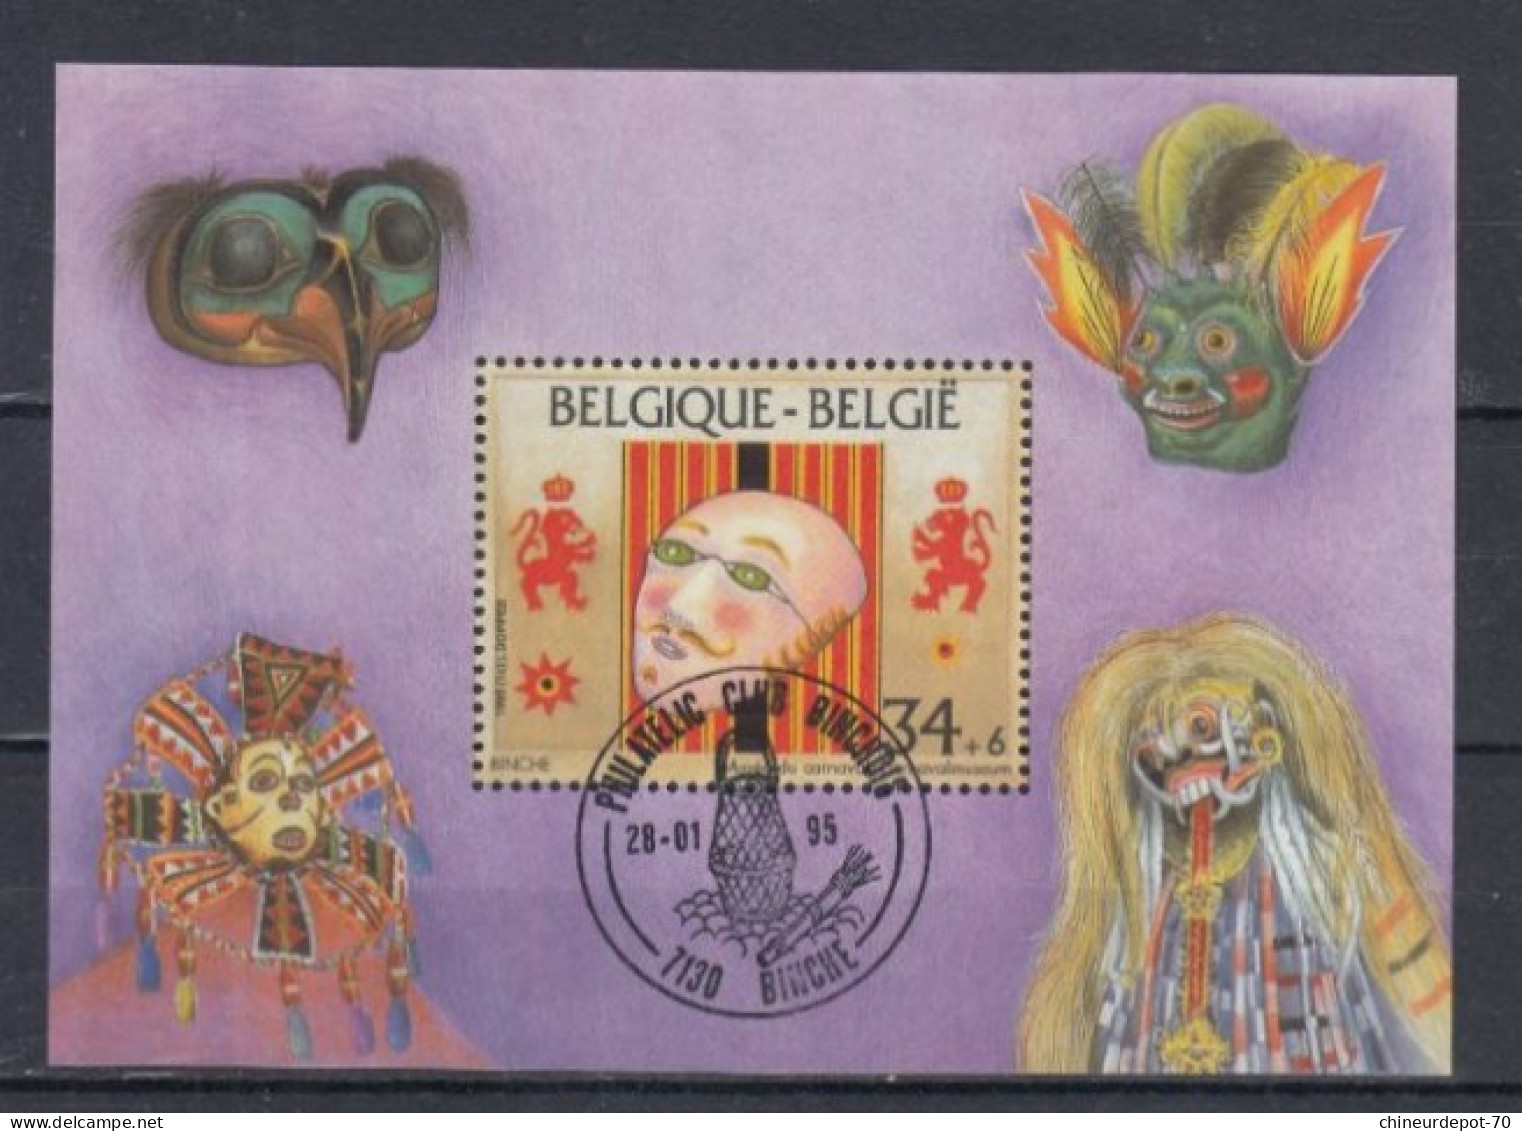 Belge BLOC MASQUE BINCHE 1995 - Gebruikt